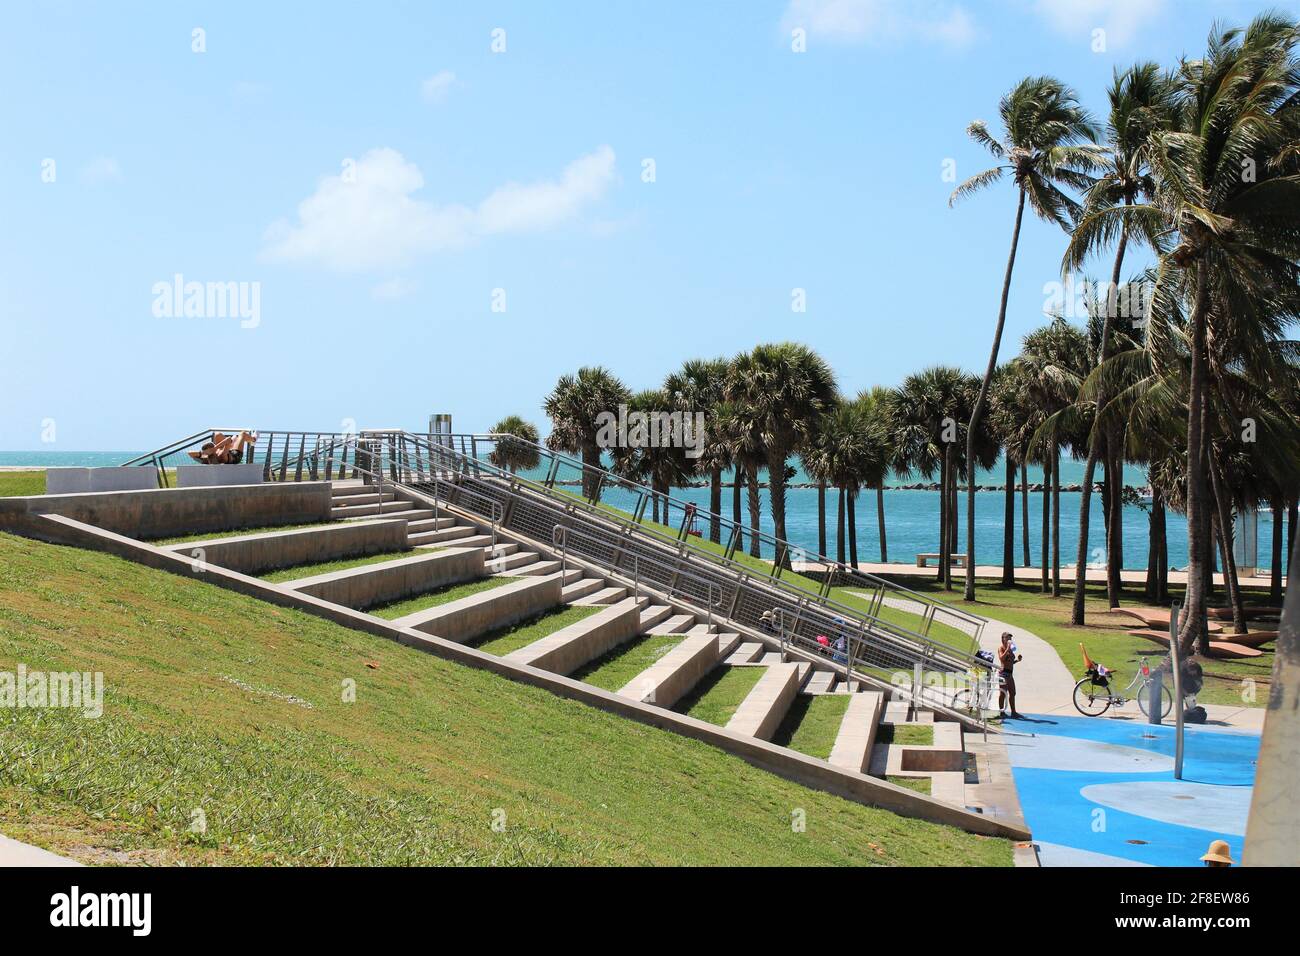 Allenamento all'aperto e parco acquatico con passi per correre e allenarsi per chi desidera allenarsi all'aperto a South Pointe Park Miami Beach, Florida. Foto Stock